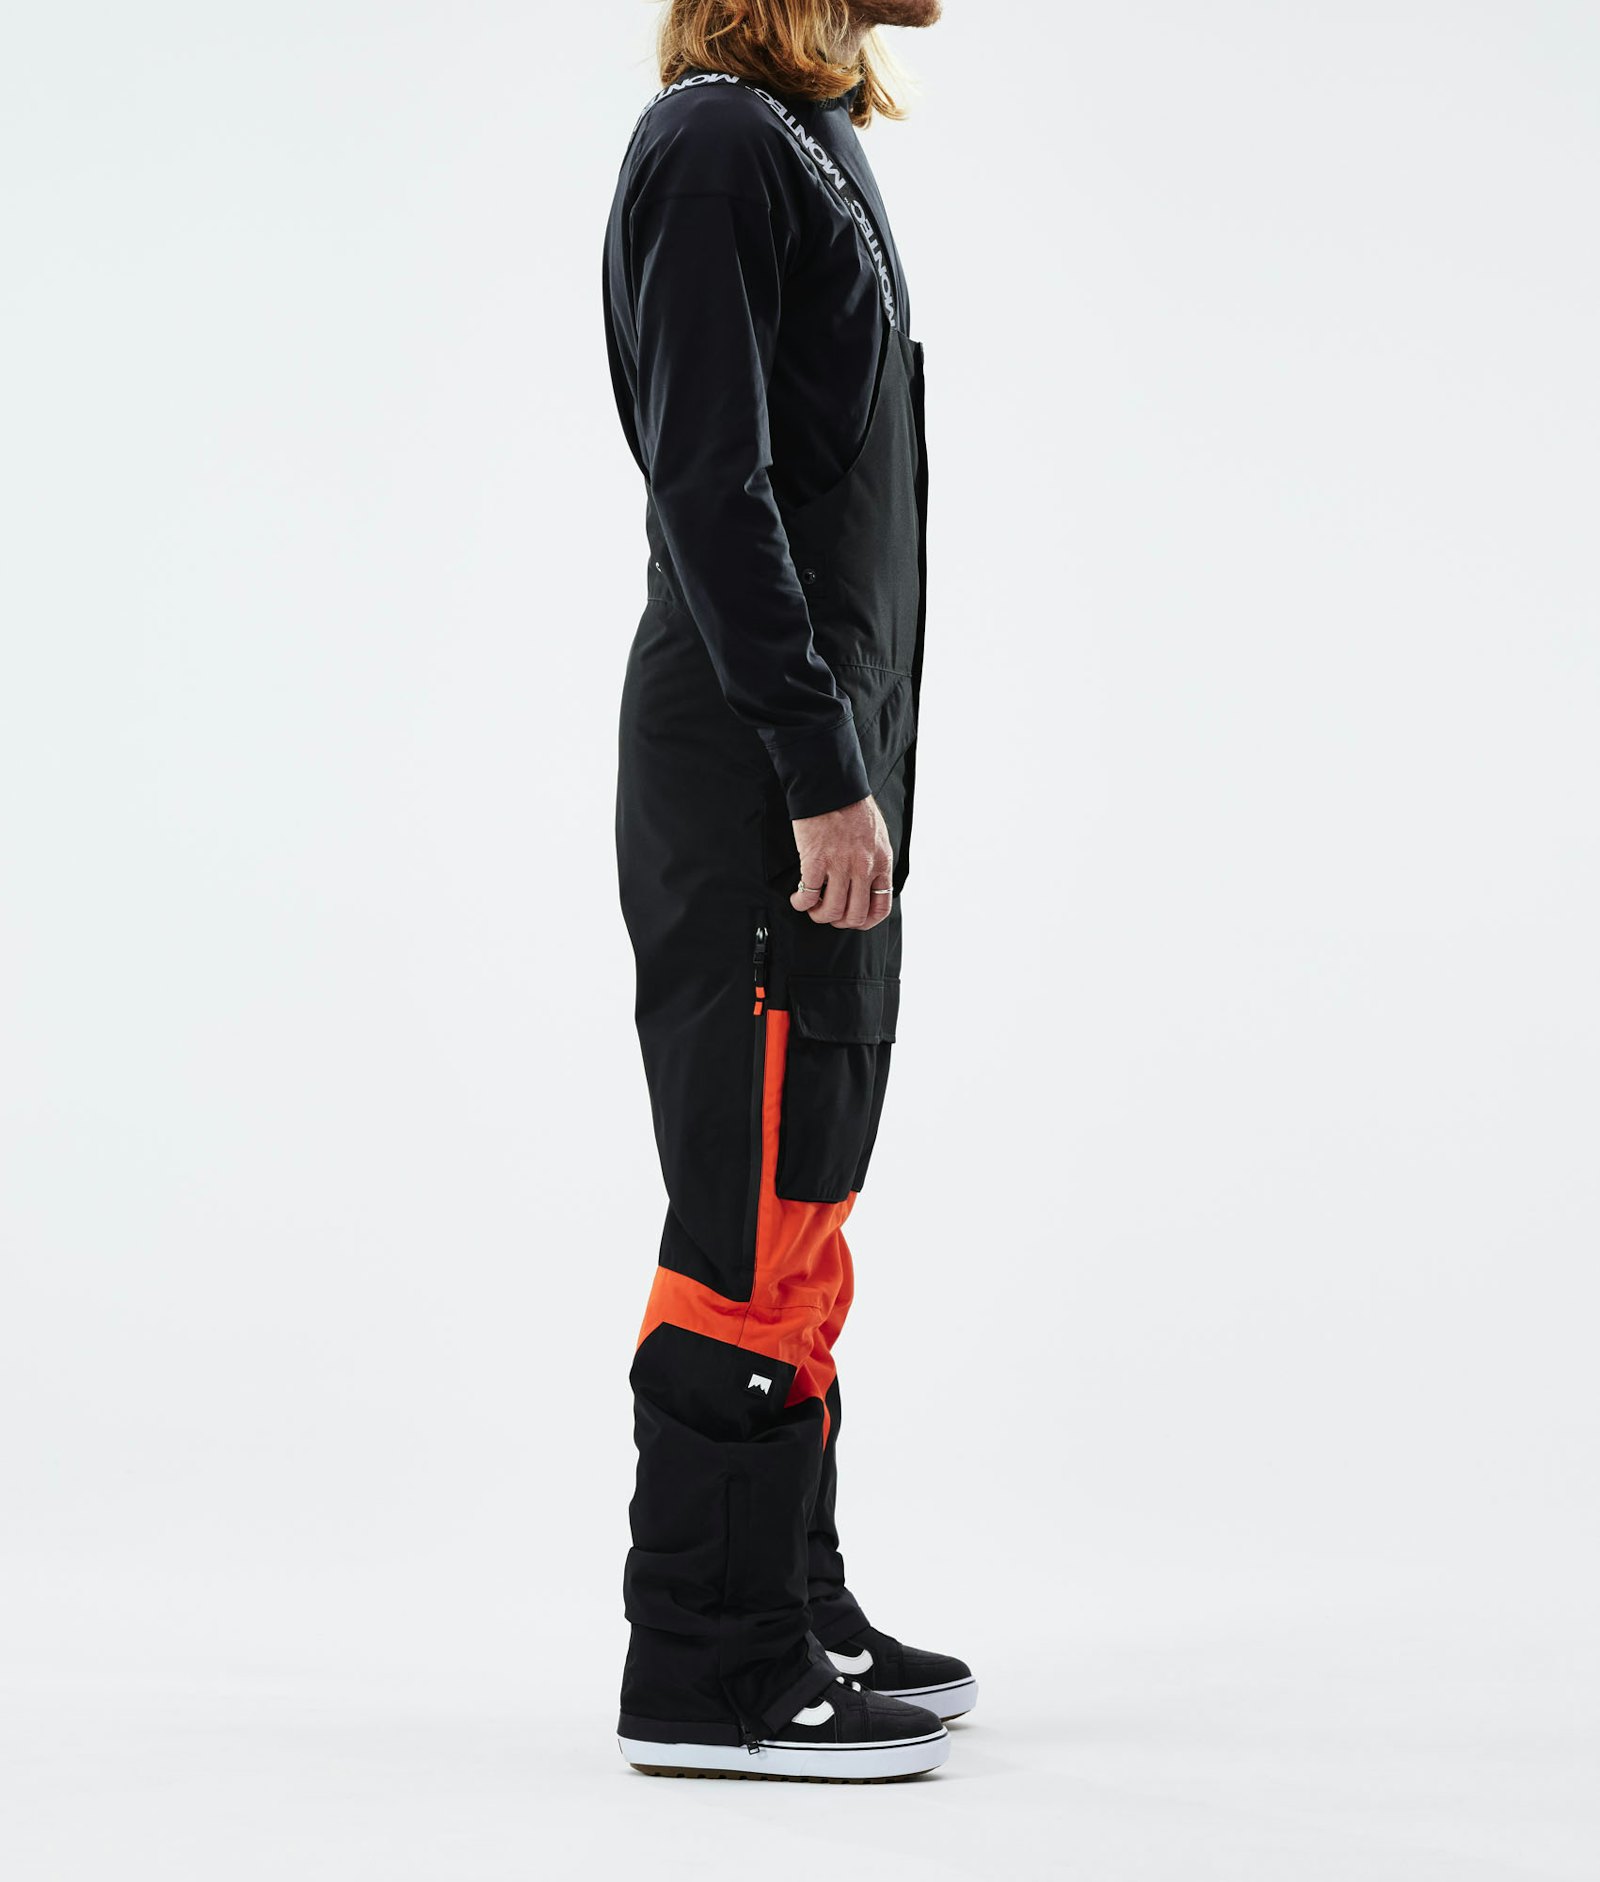 Fawk 2021 Snowboard Broek Heren Black/Orange